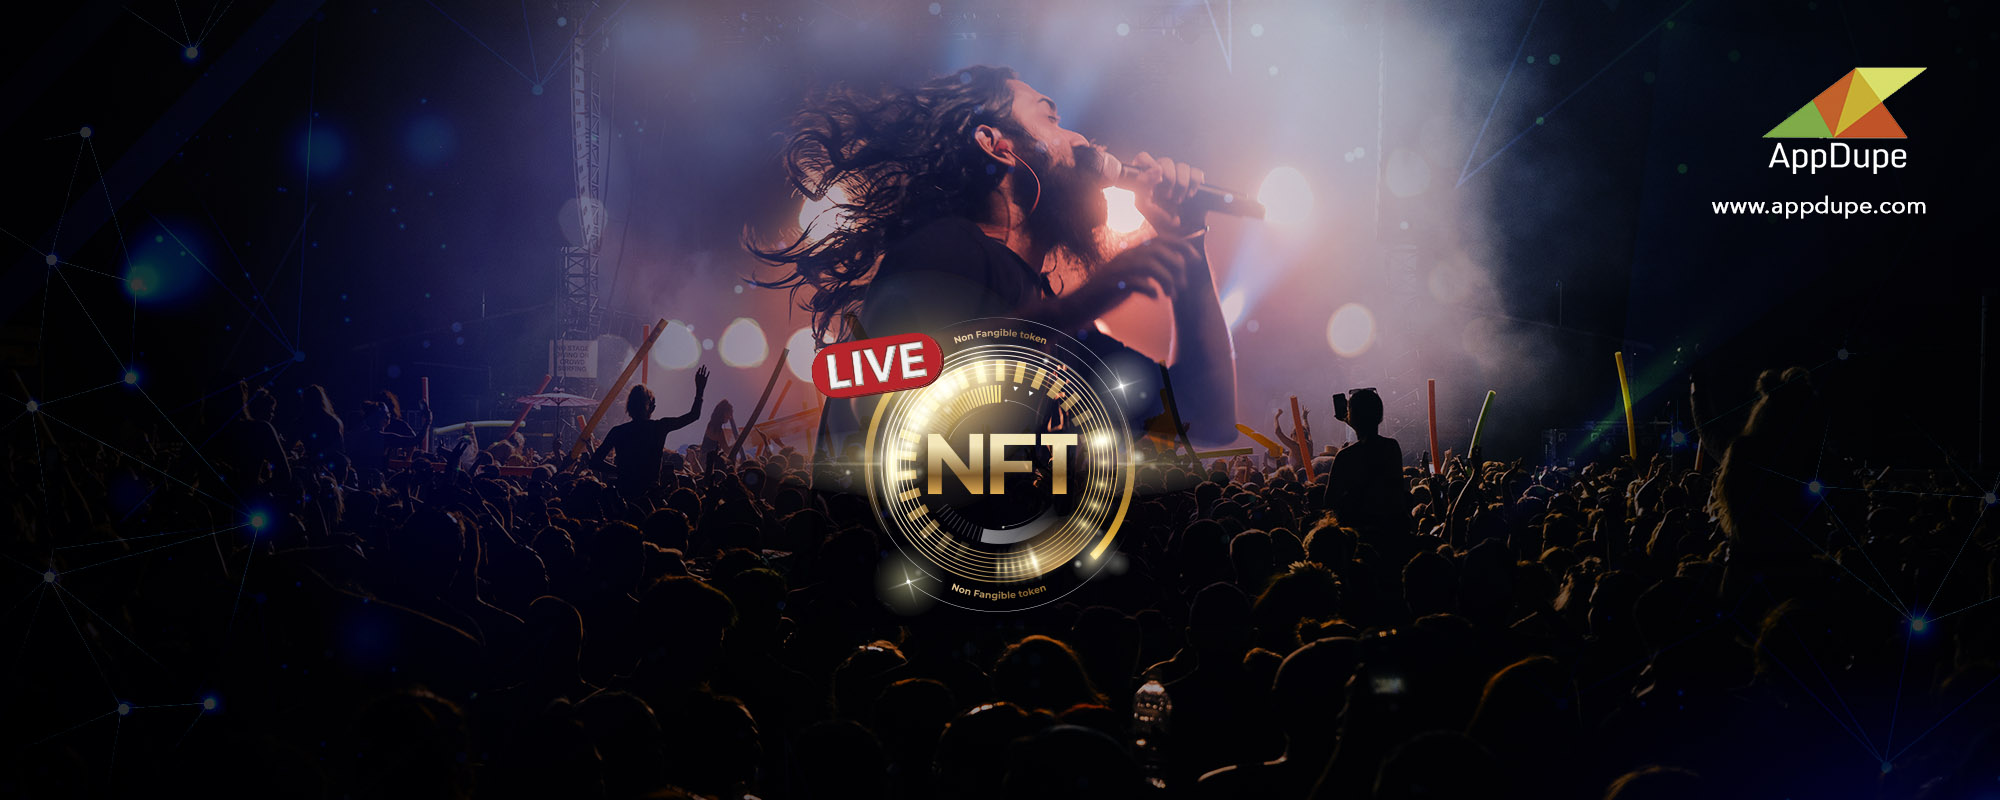 NFT Live Streaming Platform